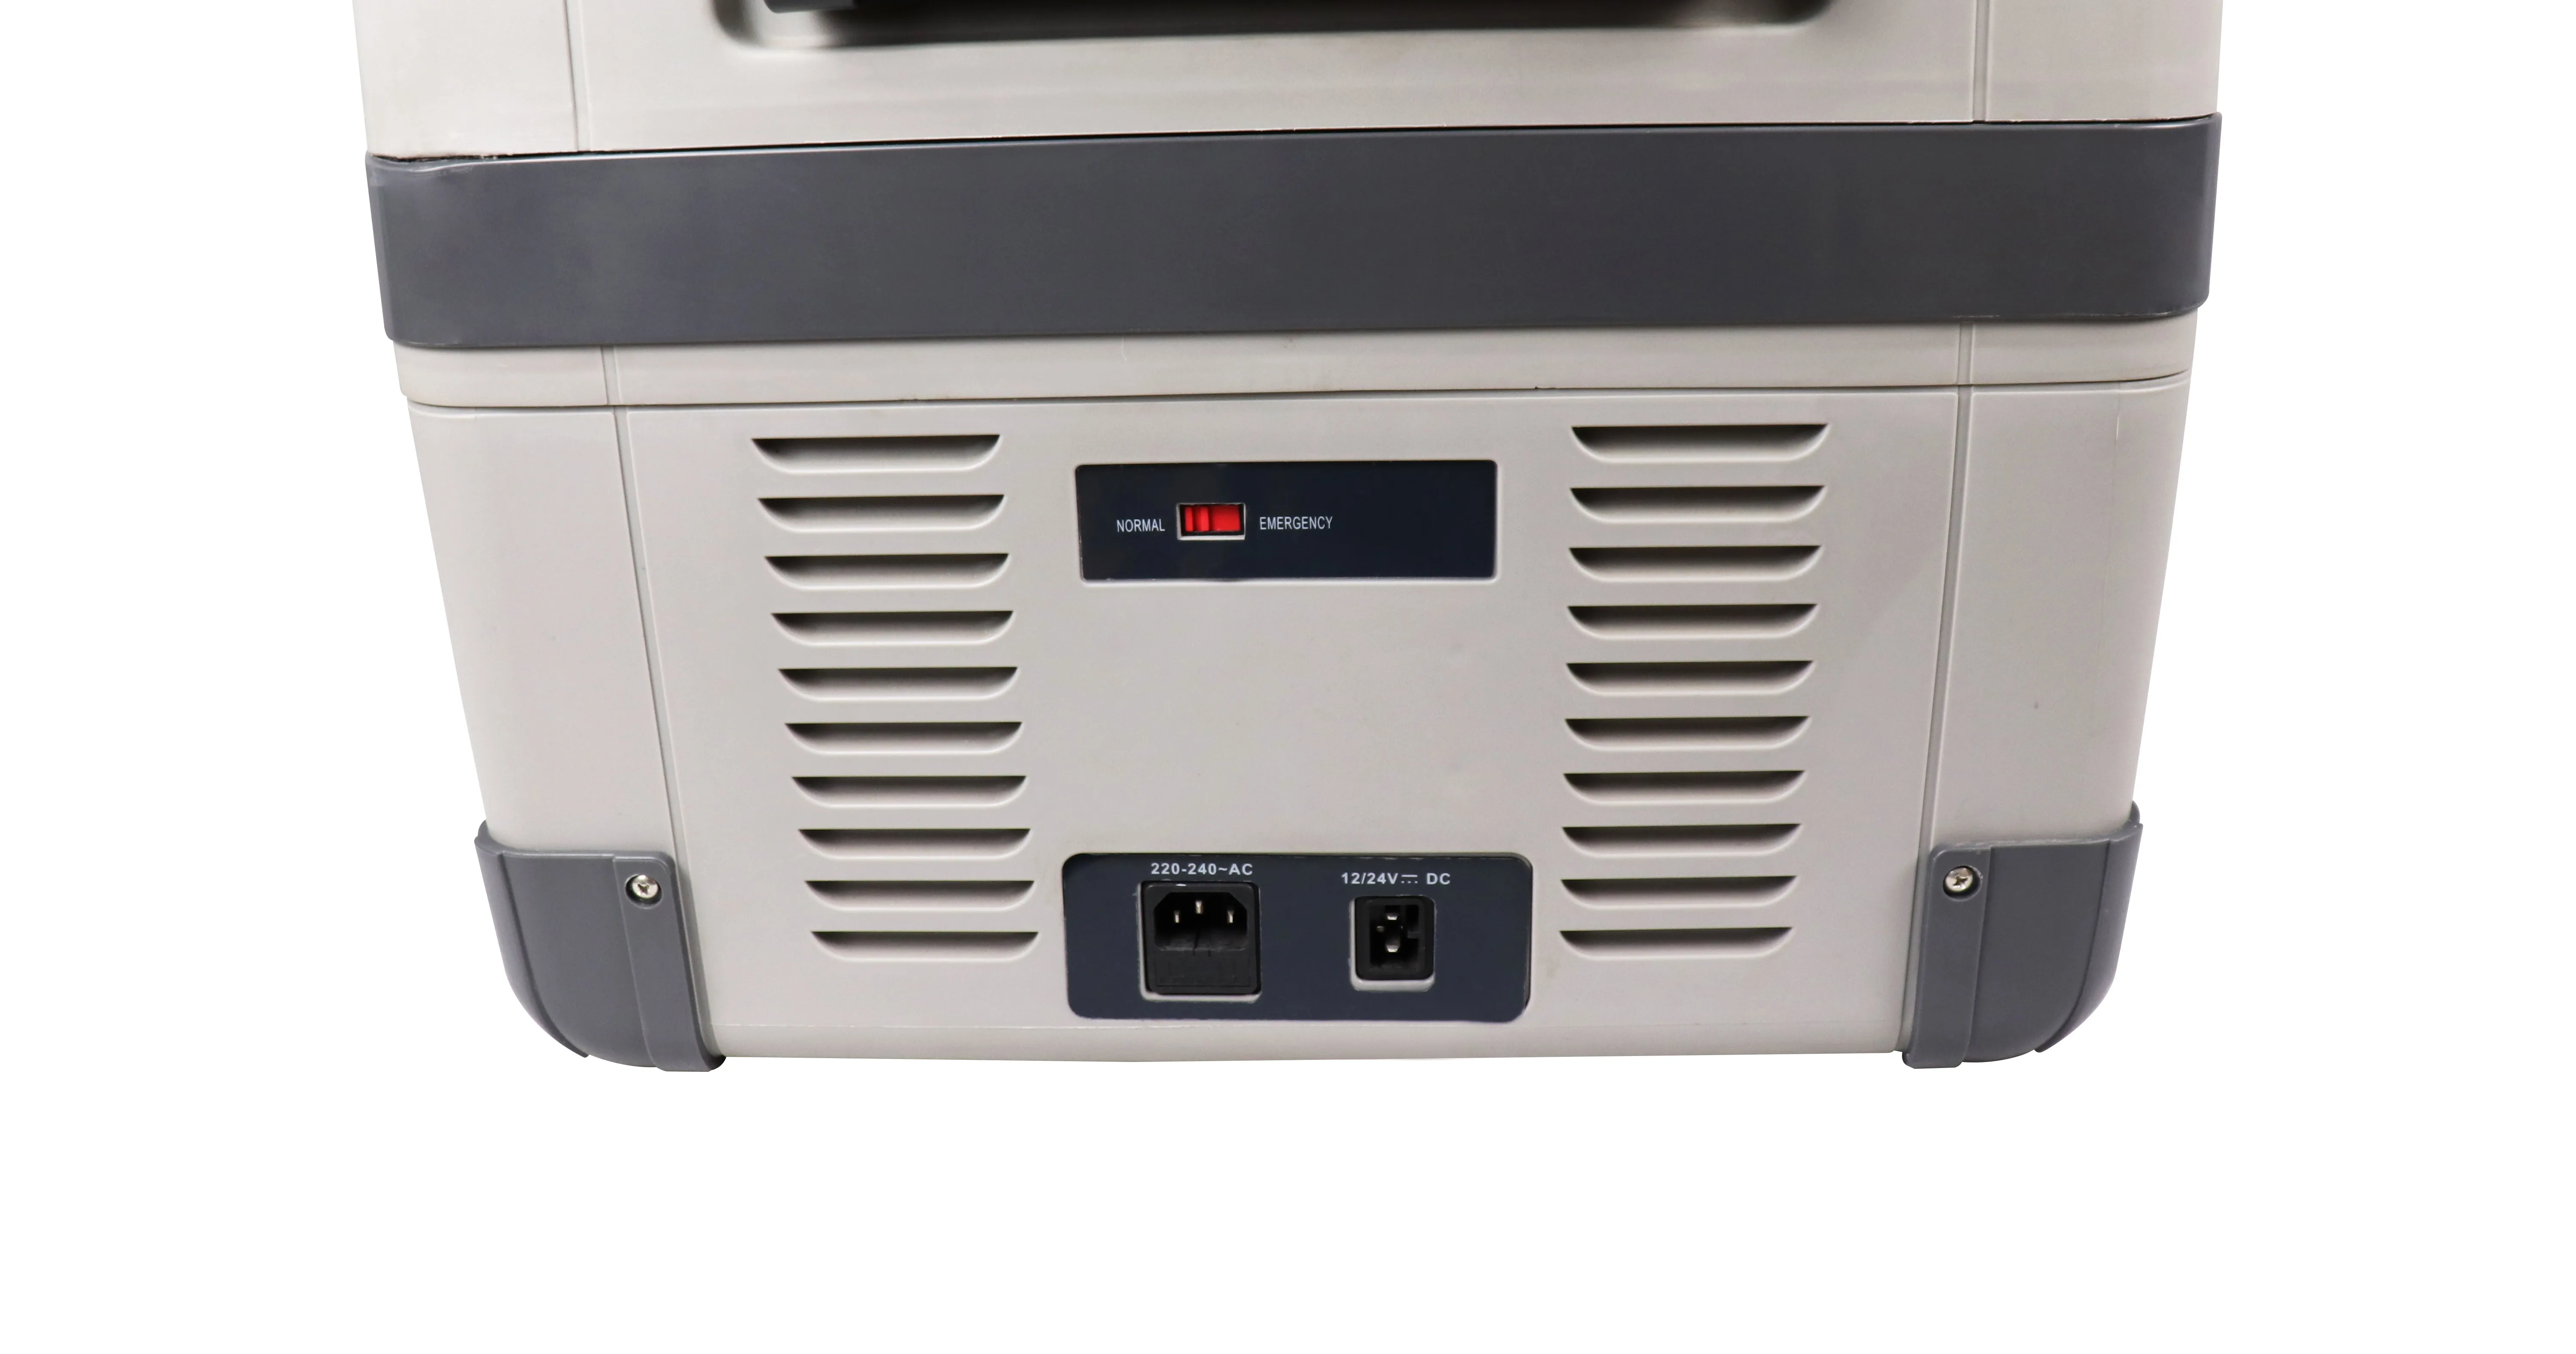 evercool 50L 12 volt compressor refriger  12v electronic freezer 12v fridge secop